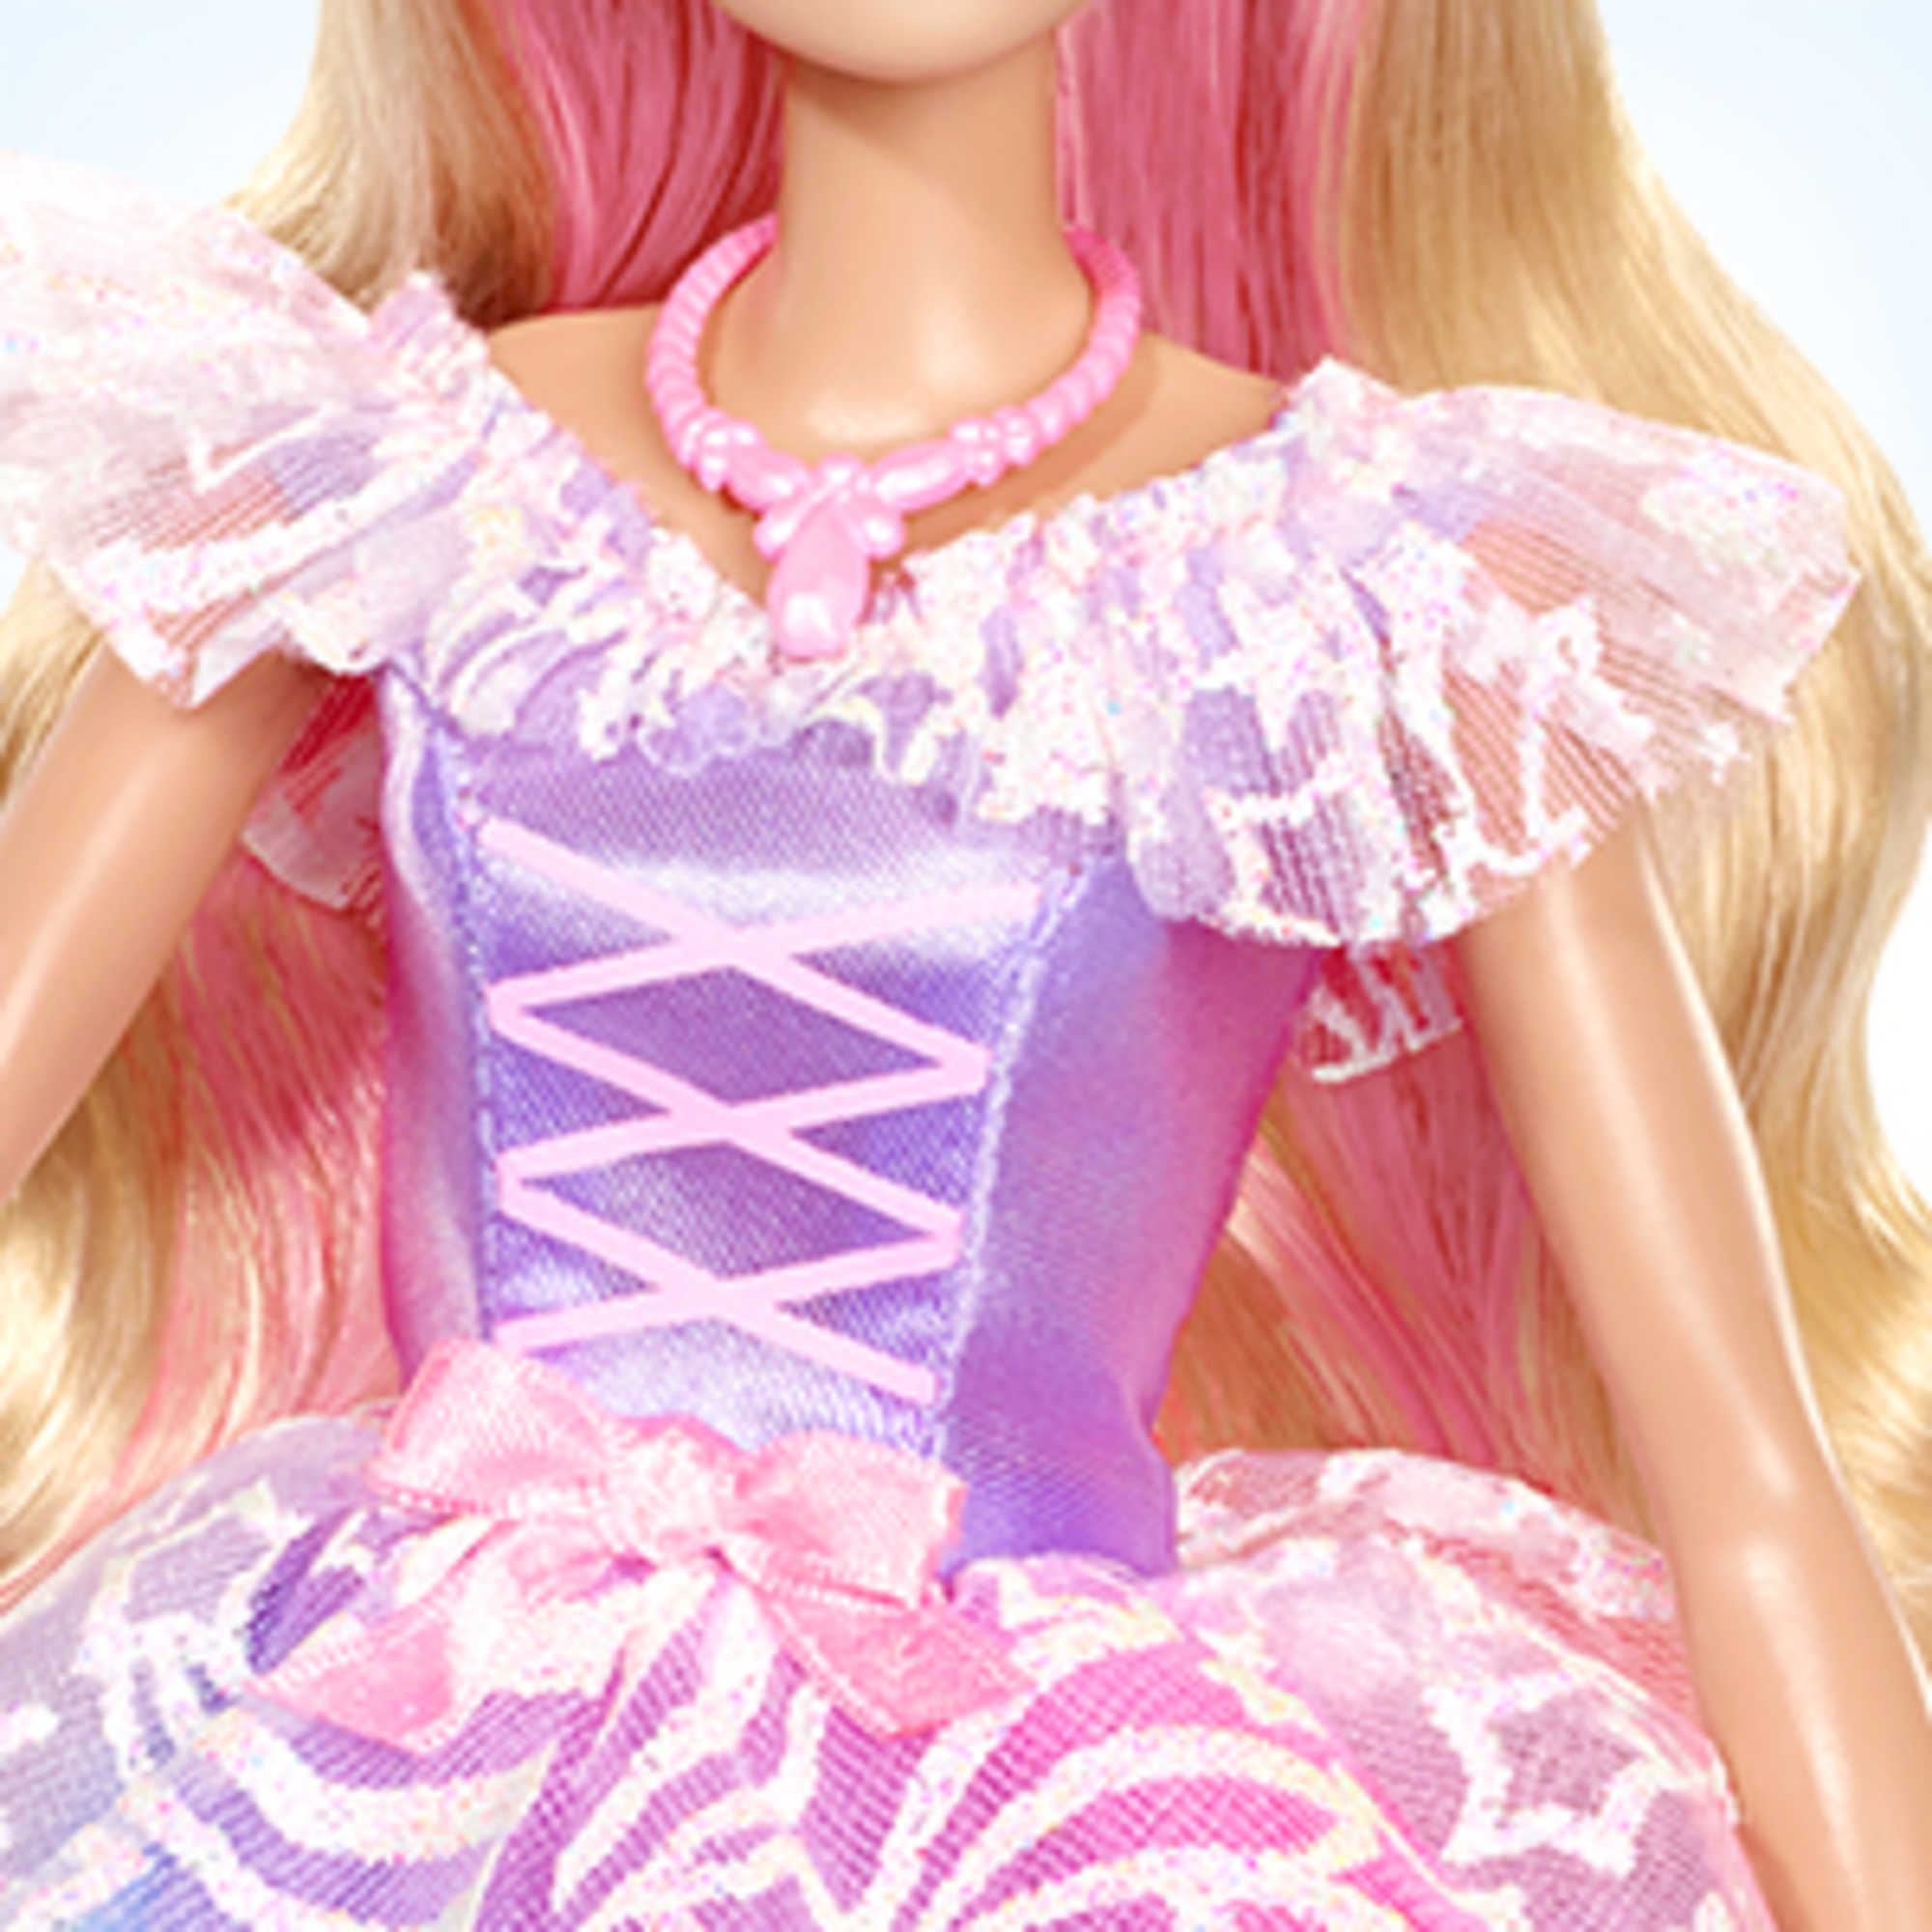 Mattel Barbie Dreamtopia Poupée Princesse Cheveux Roses Poupée Mannequin -  N/A - Kiabi - 15.29€